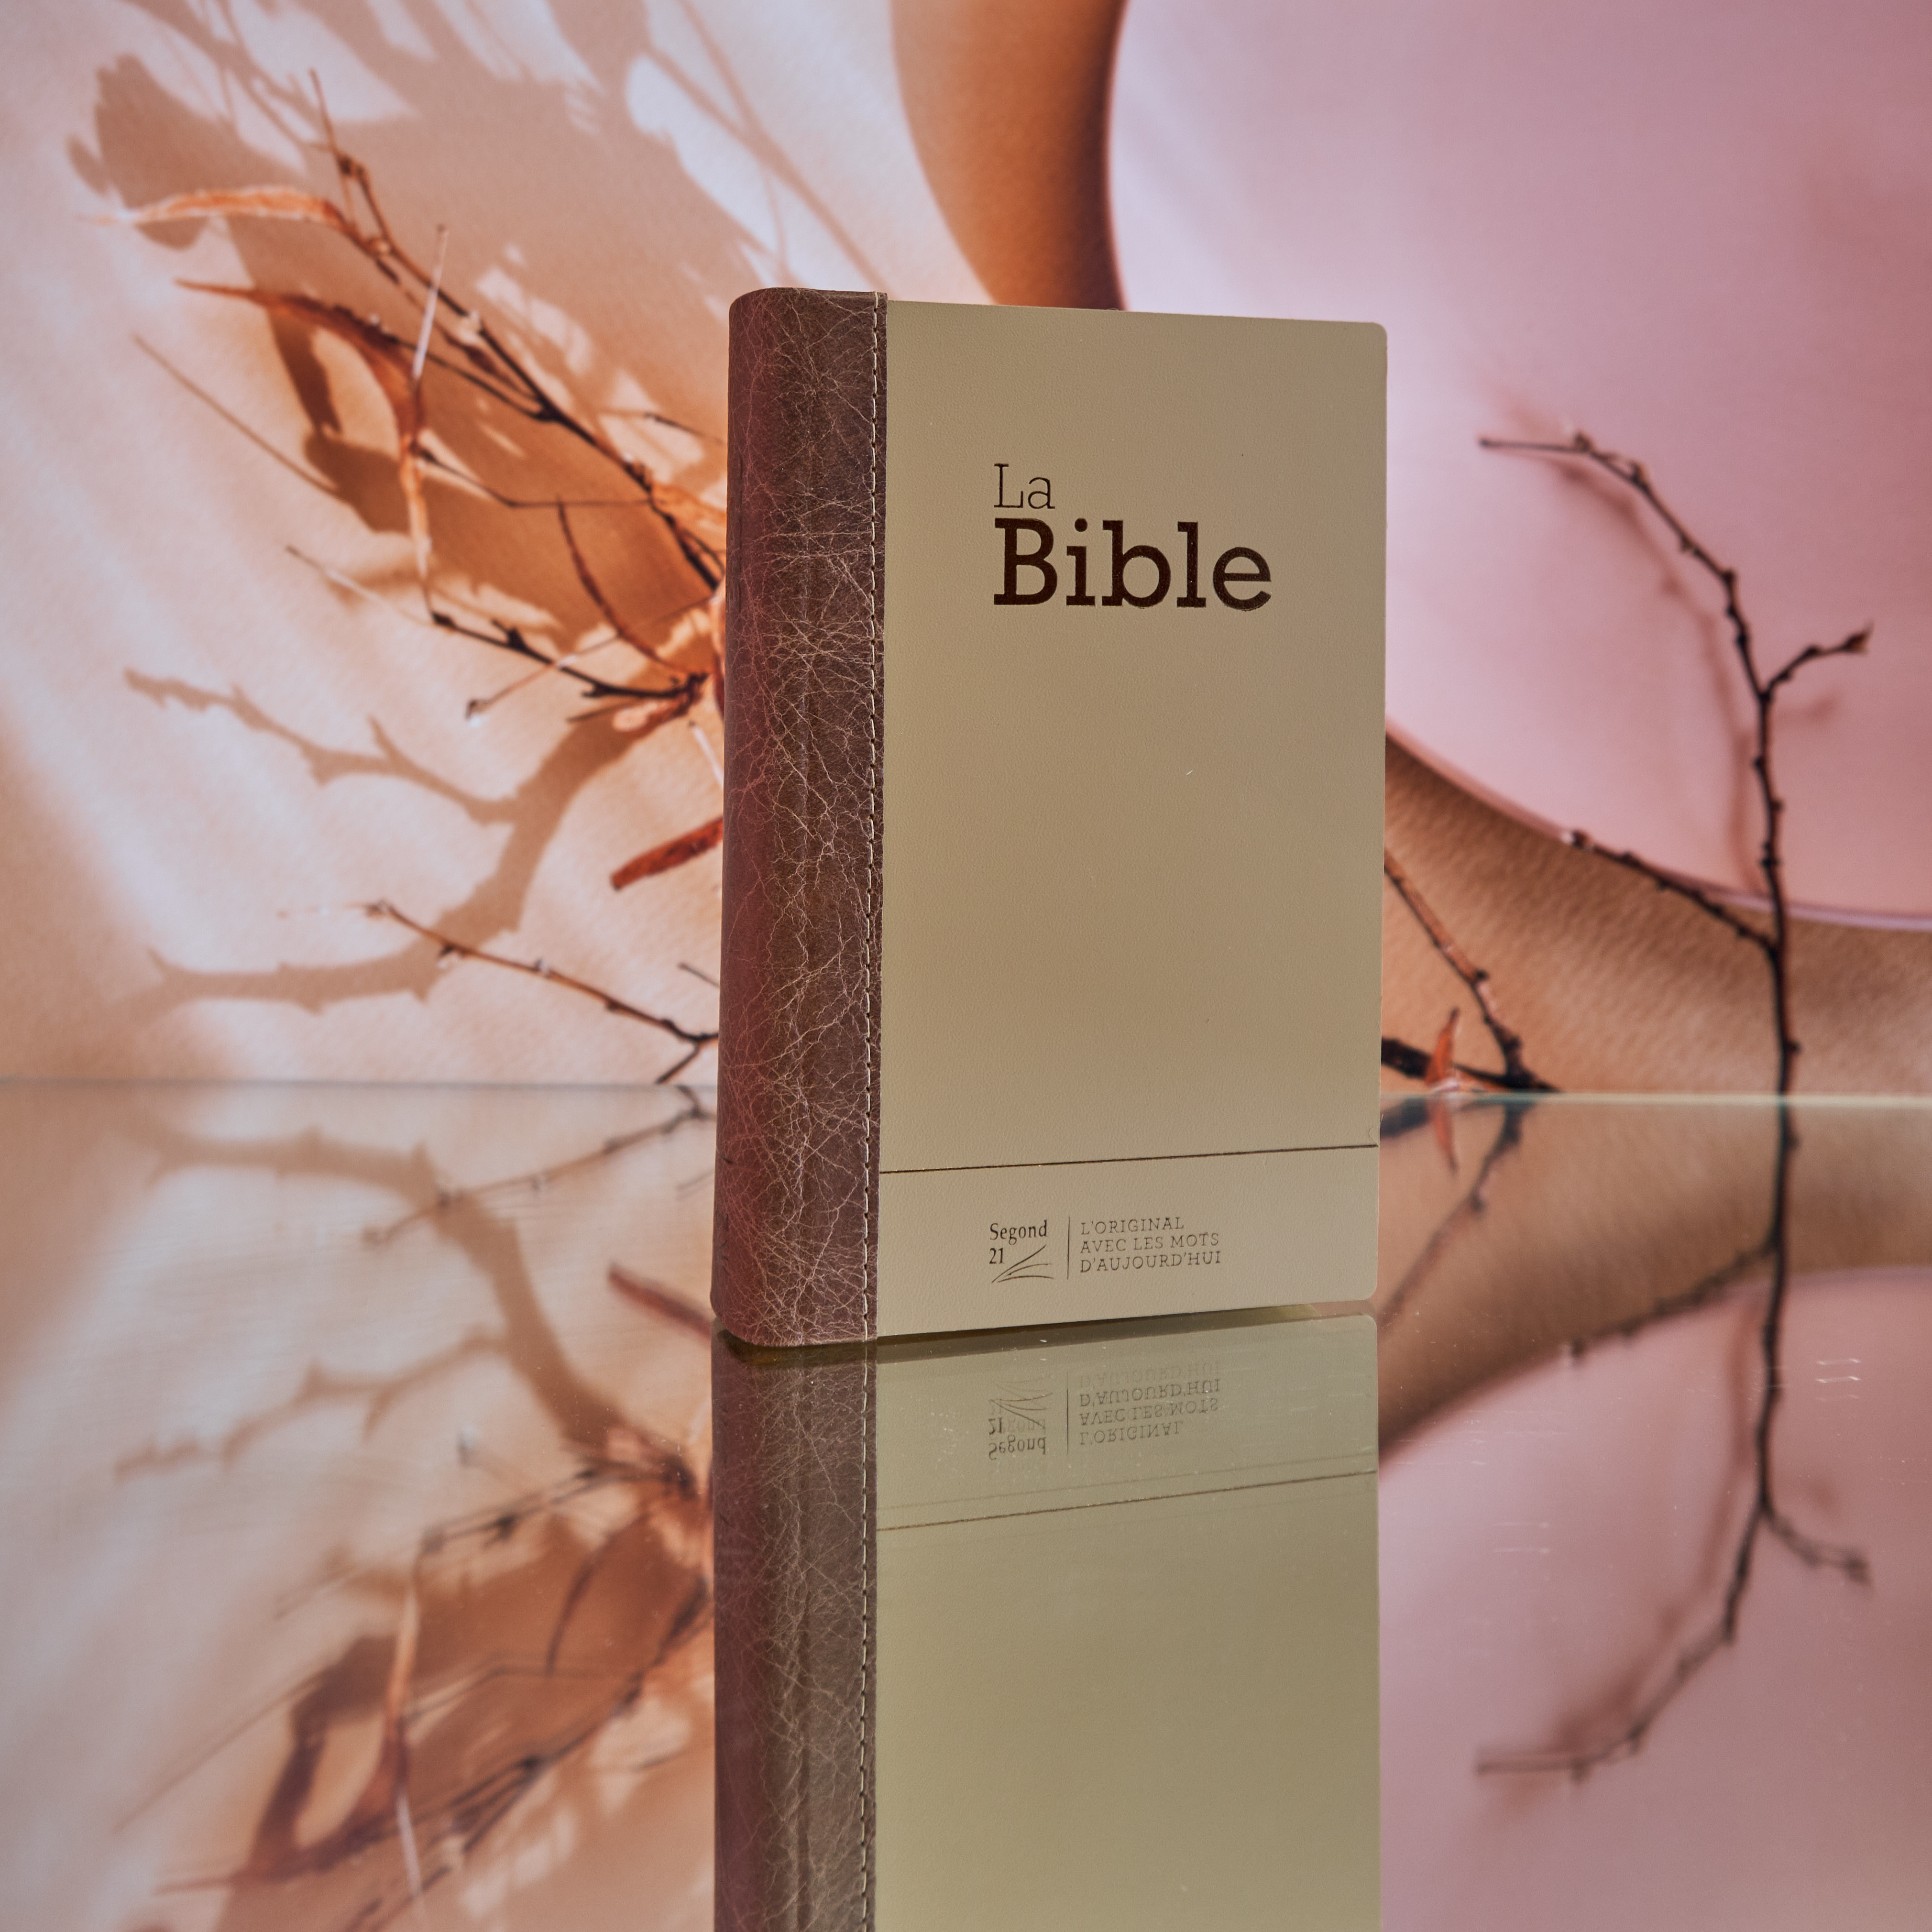 Bible Segond 21 compacte (Premium Style) - couverture semi-rigide duo cuir praliné-chocolat, avec tranches dorées et onglets